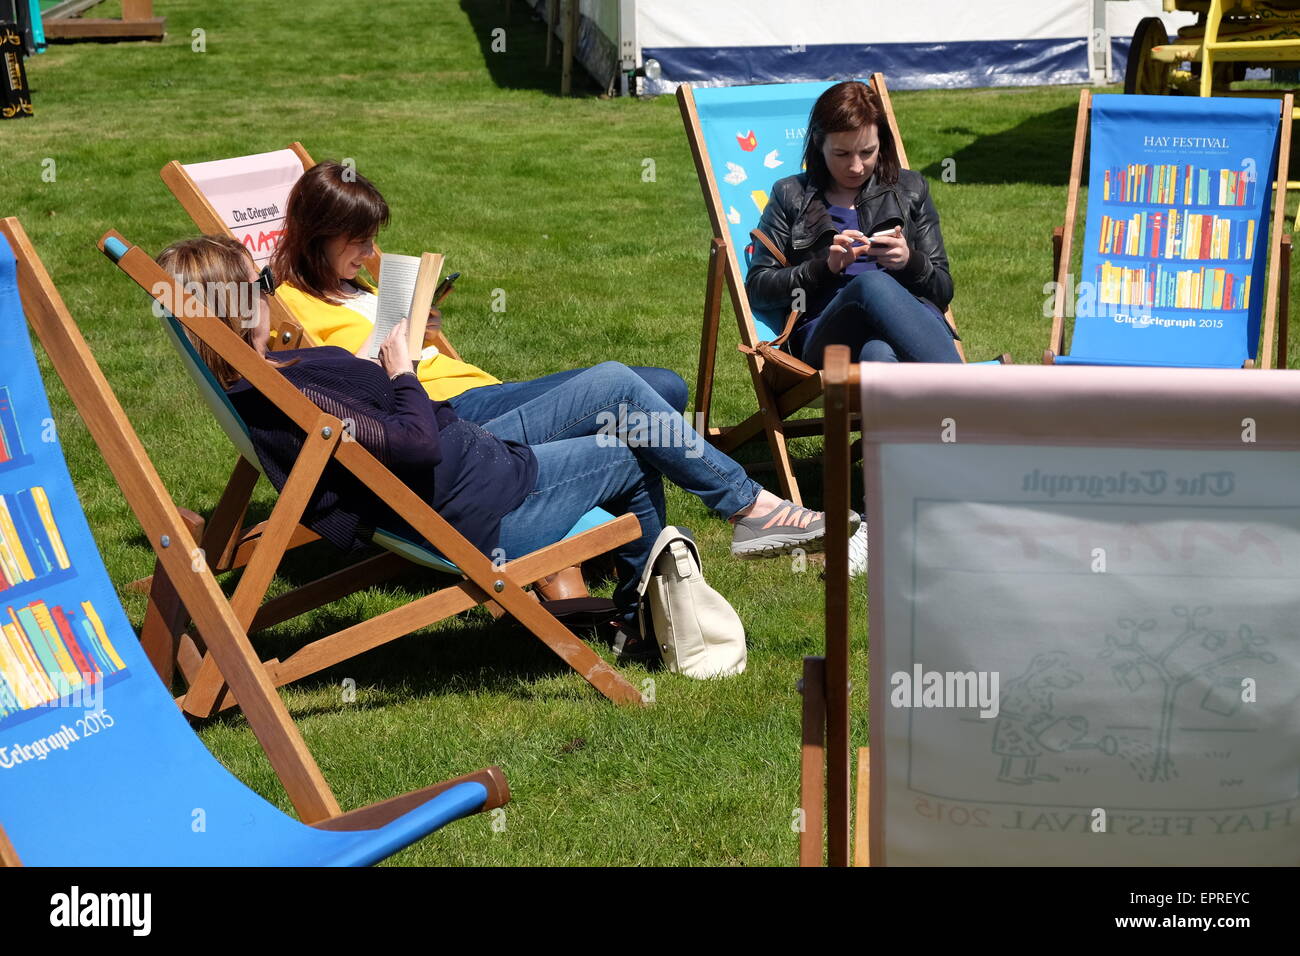 Powys, Wales, UK. 21. Mai 2015. Eröffnungstag für 2015 Hay Festival.  Besucher der Hay Festival genießen Sie die Sonne und nehmen Sie sich Zeit zum sitzen und lesen auf den Festival-Liegestühlen. Stockfoto